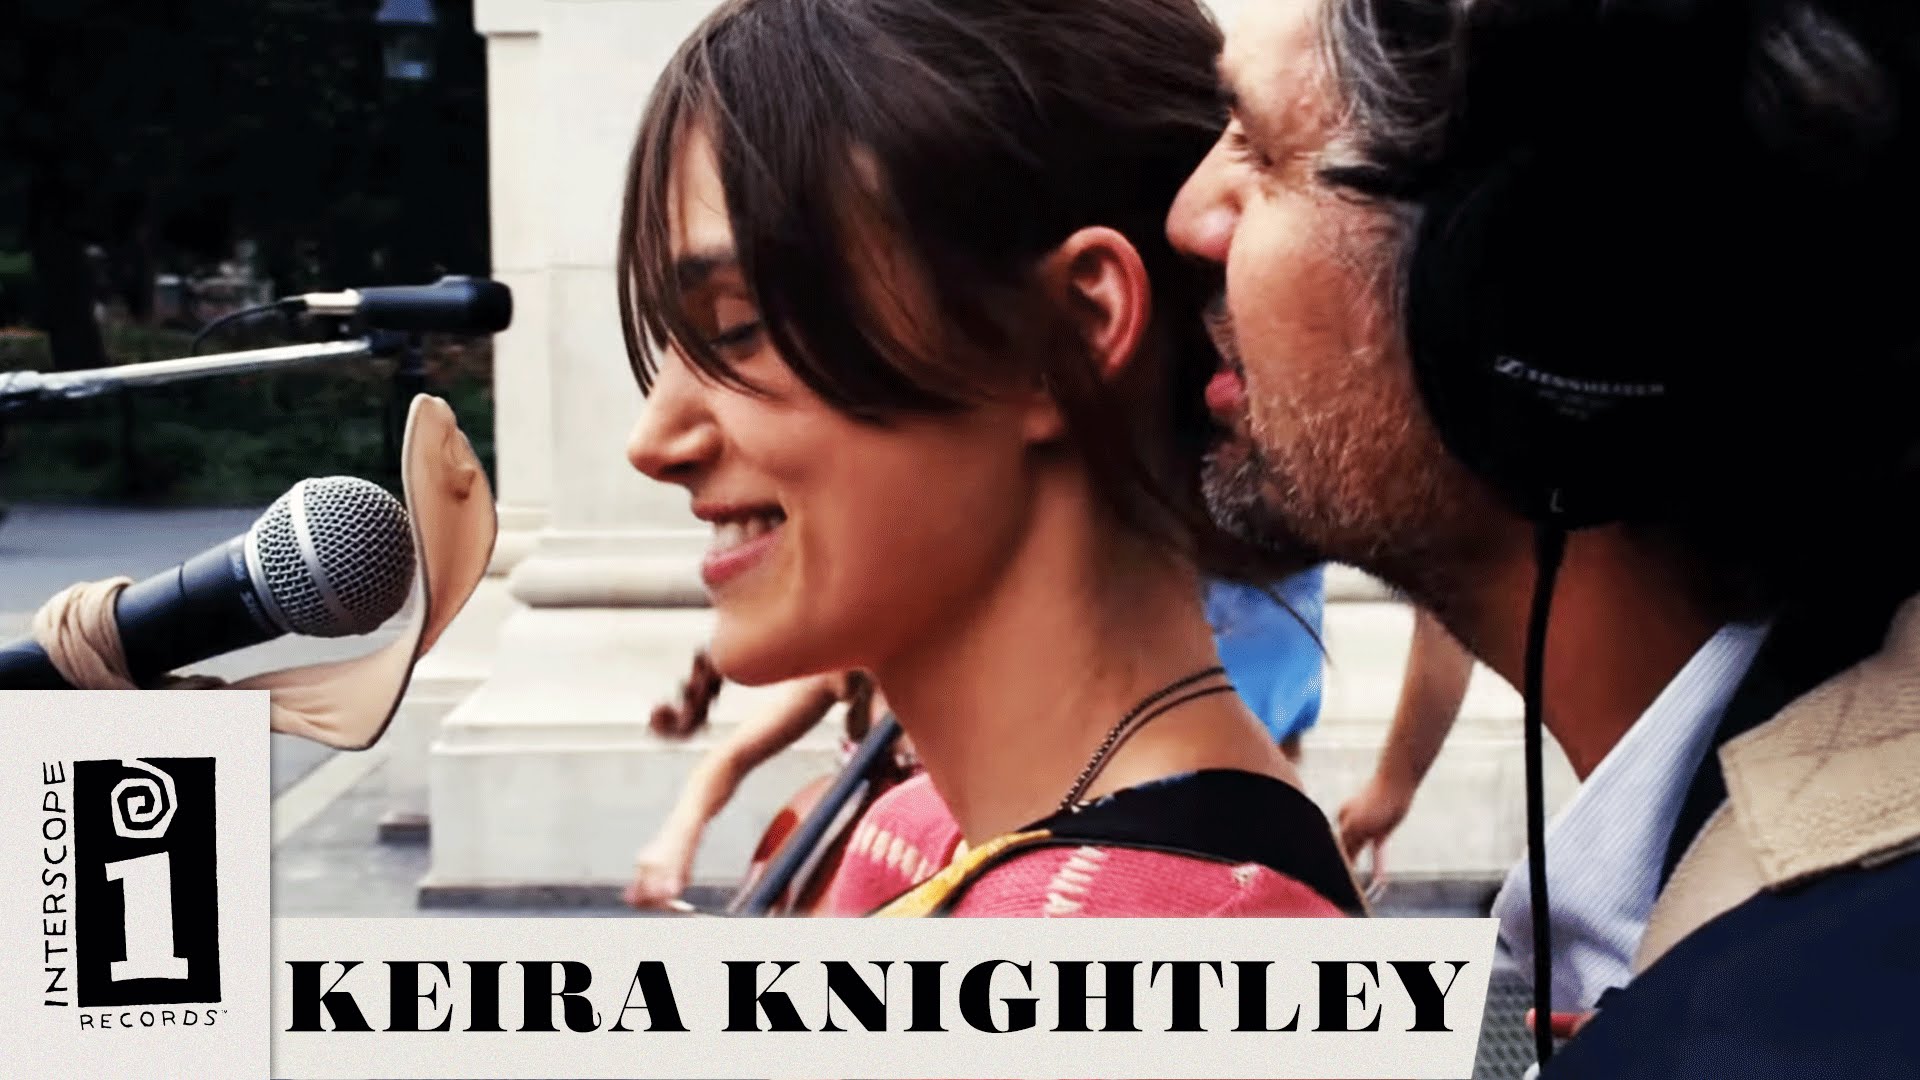 Keira Knightley/Adam Levine - Lost Stars (Begin Again Soundtrack)